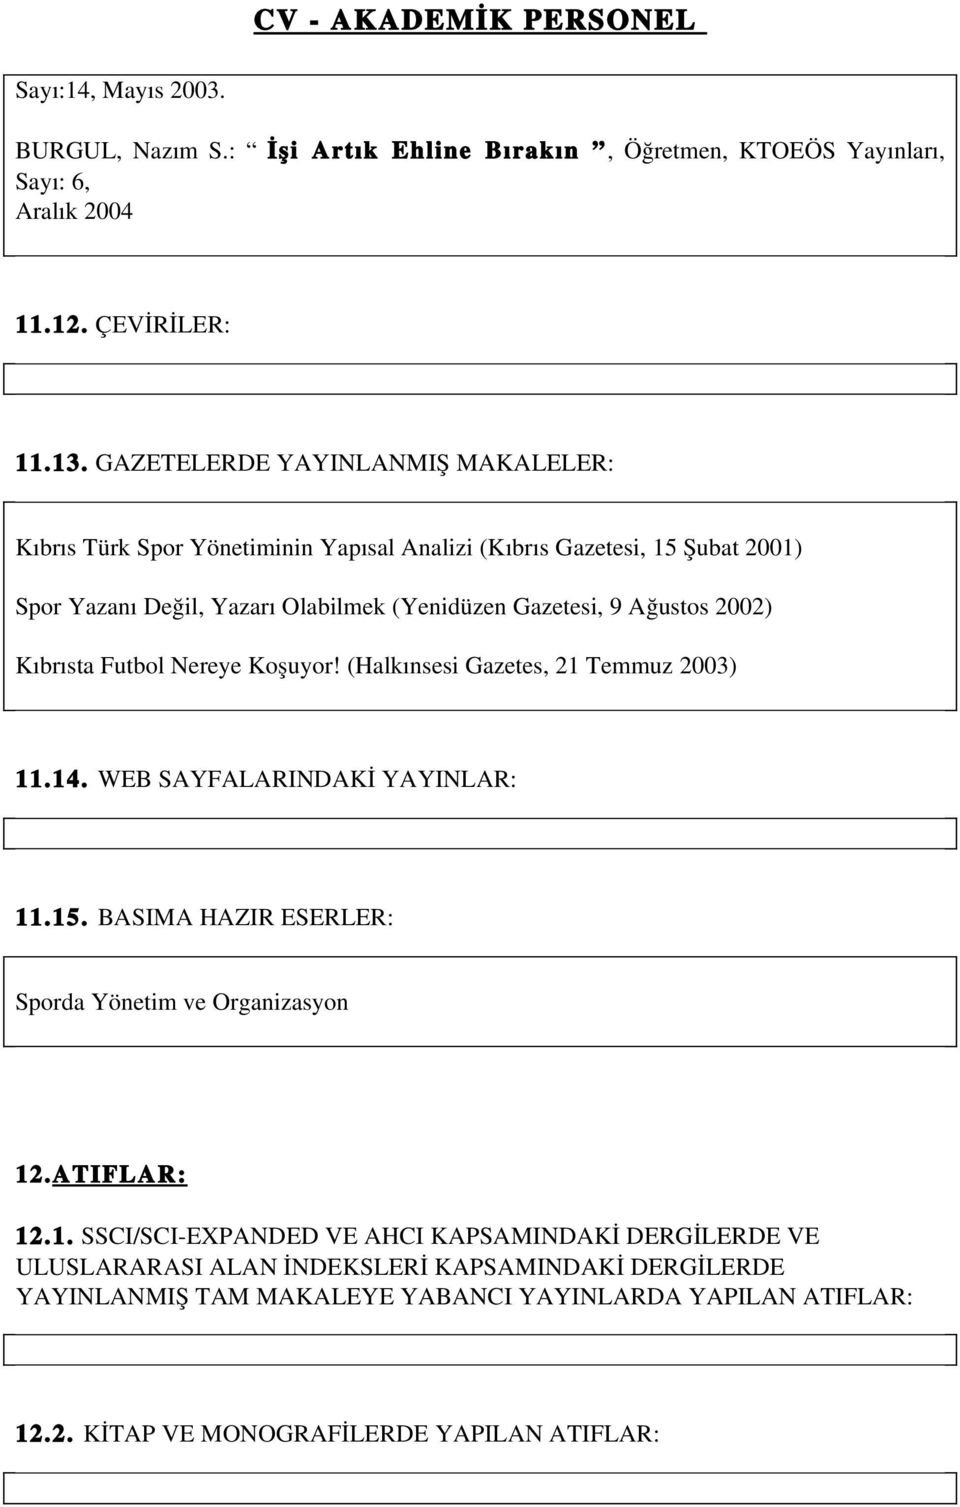 2002) Kıbrısta Futbol Nereye Koşuyor! (Halkınsesi Gazetes, 21 Temmuz 2003) 11.14. WEB SAYFALARINDAKİ YAYINLAR: 11.15. BASIMA HAZIR ESERLER: Sporda Yönetim ve Organizasyon 12.